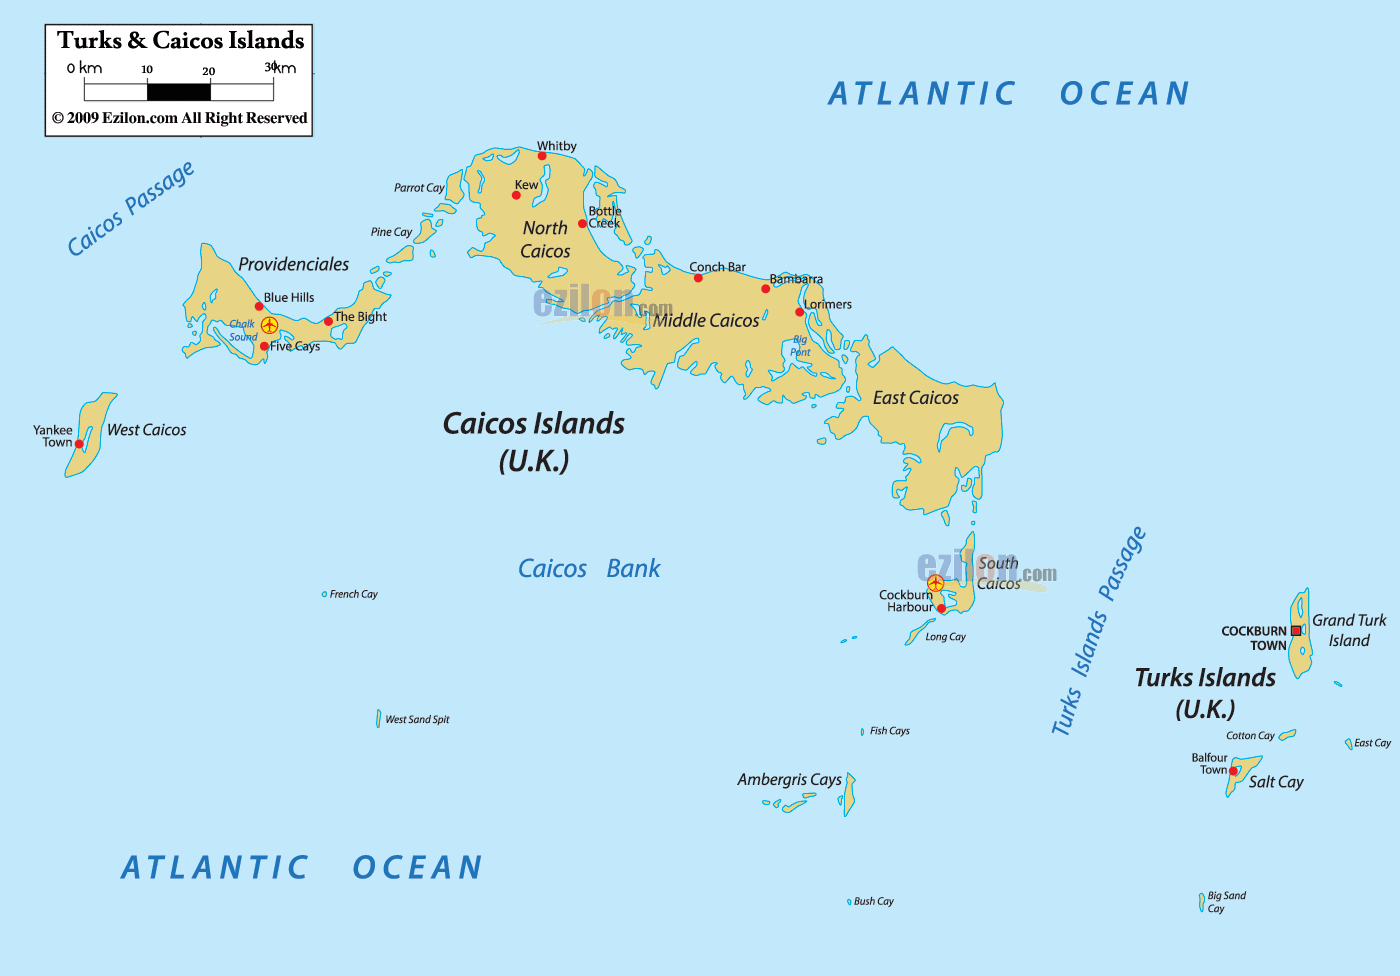 特克斯和凯科斯群岛（Turks and Caicos Islands）使用的，海牙认证美国